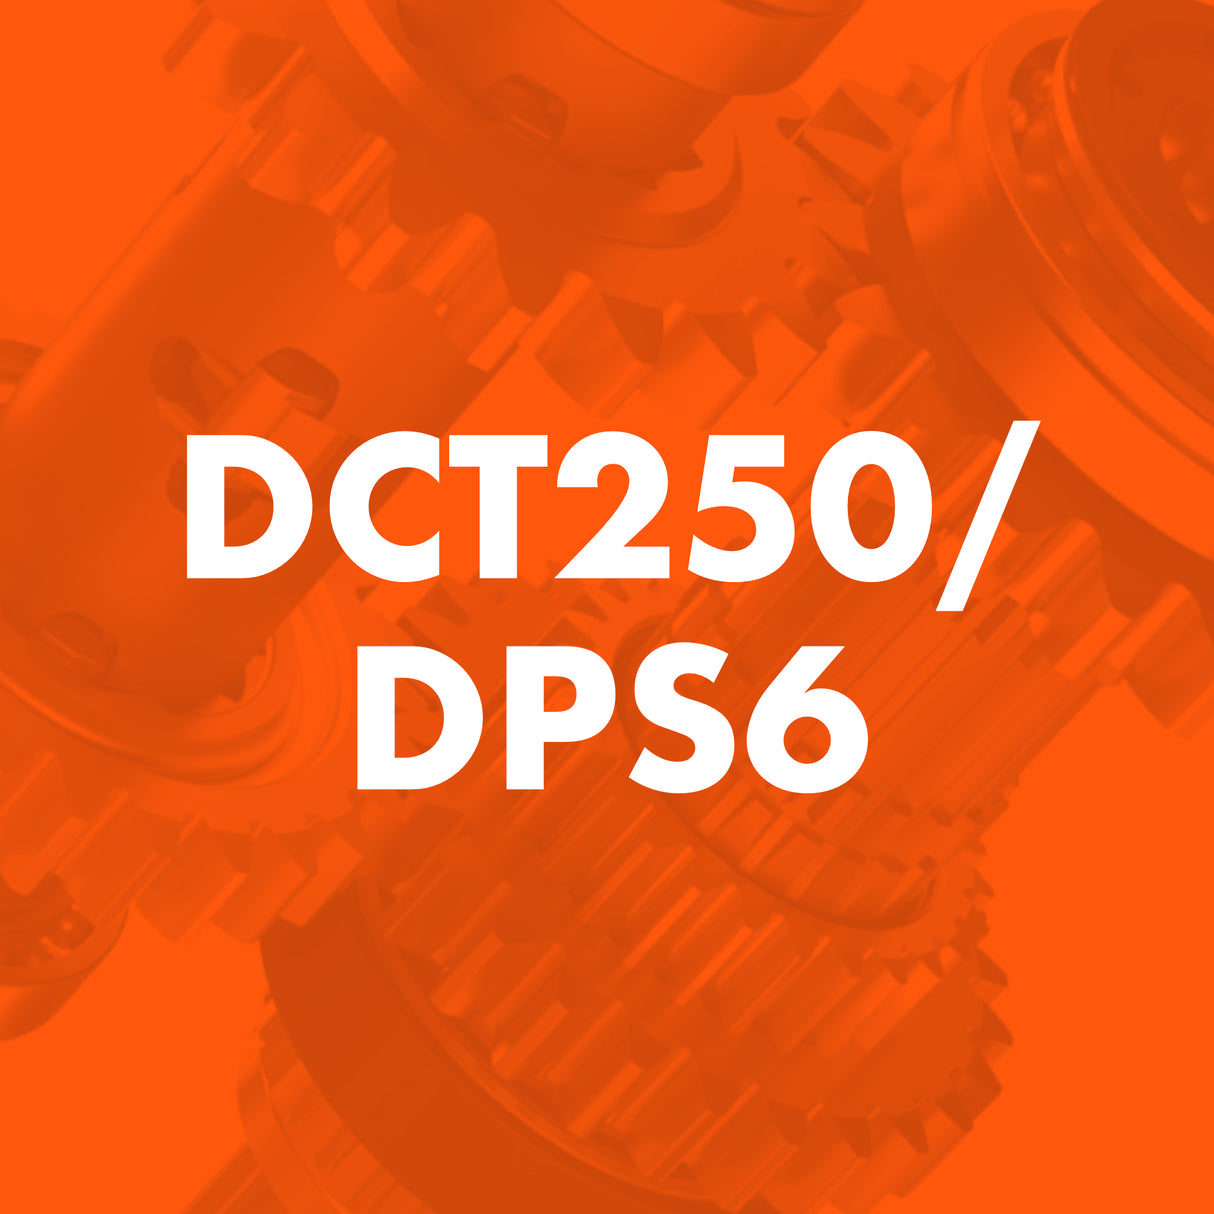 DCT250/DPS6 Catalogue